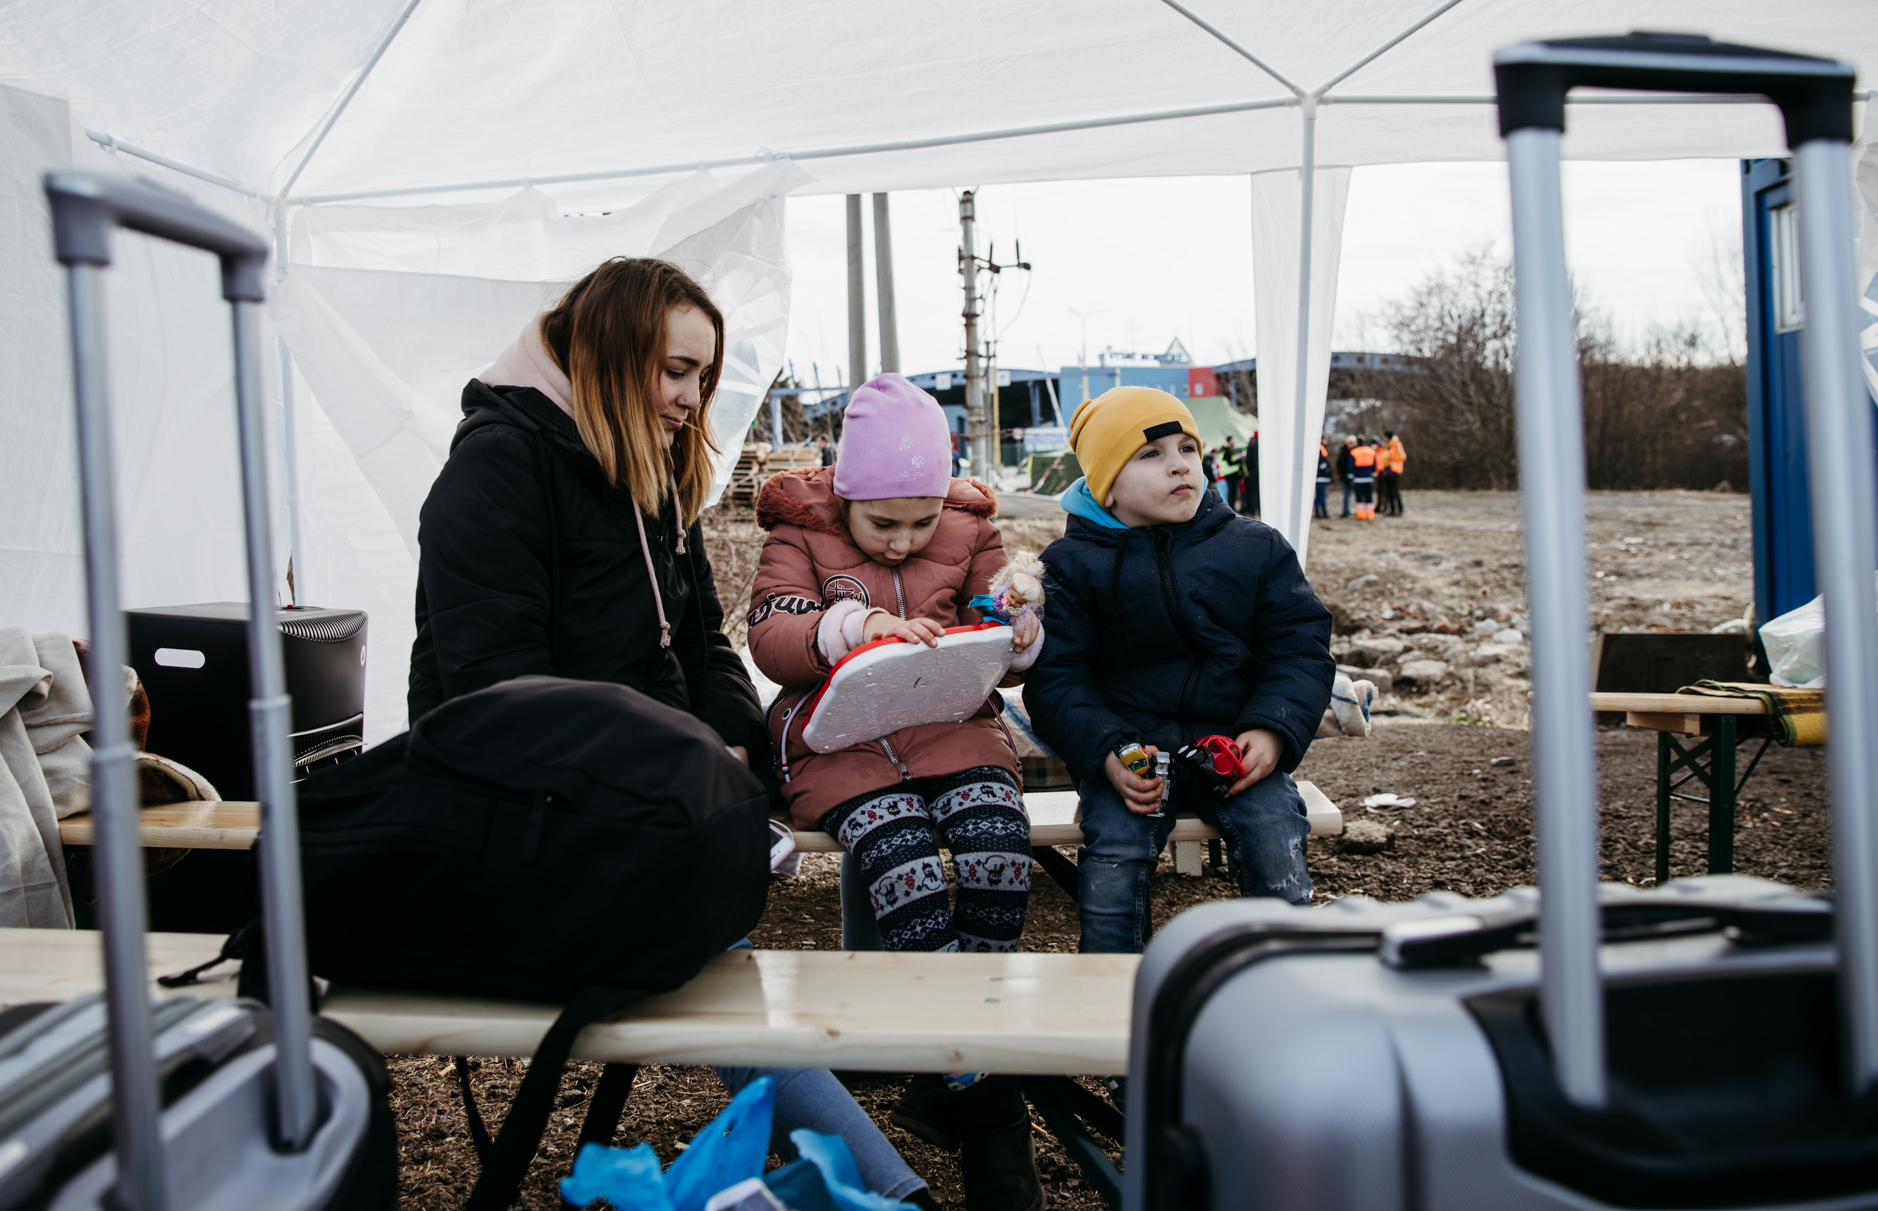 Viasat จับมือ Košice ให้บริการ Wi-Fi ในสโลวาเกีย รองรับการให้บริการแก่ผู้ลี้ภัยชาวยูเครน ในพื้นที่ทางตะวันออกของสโลวาเกีย